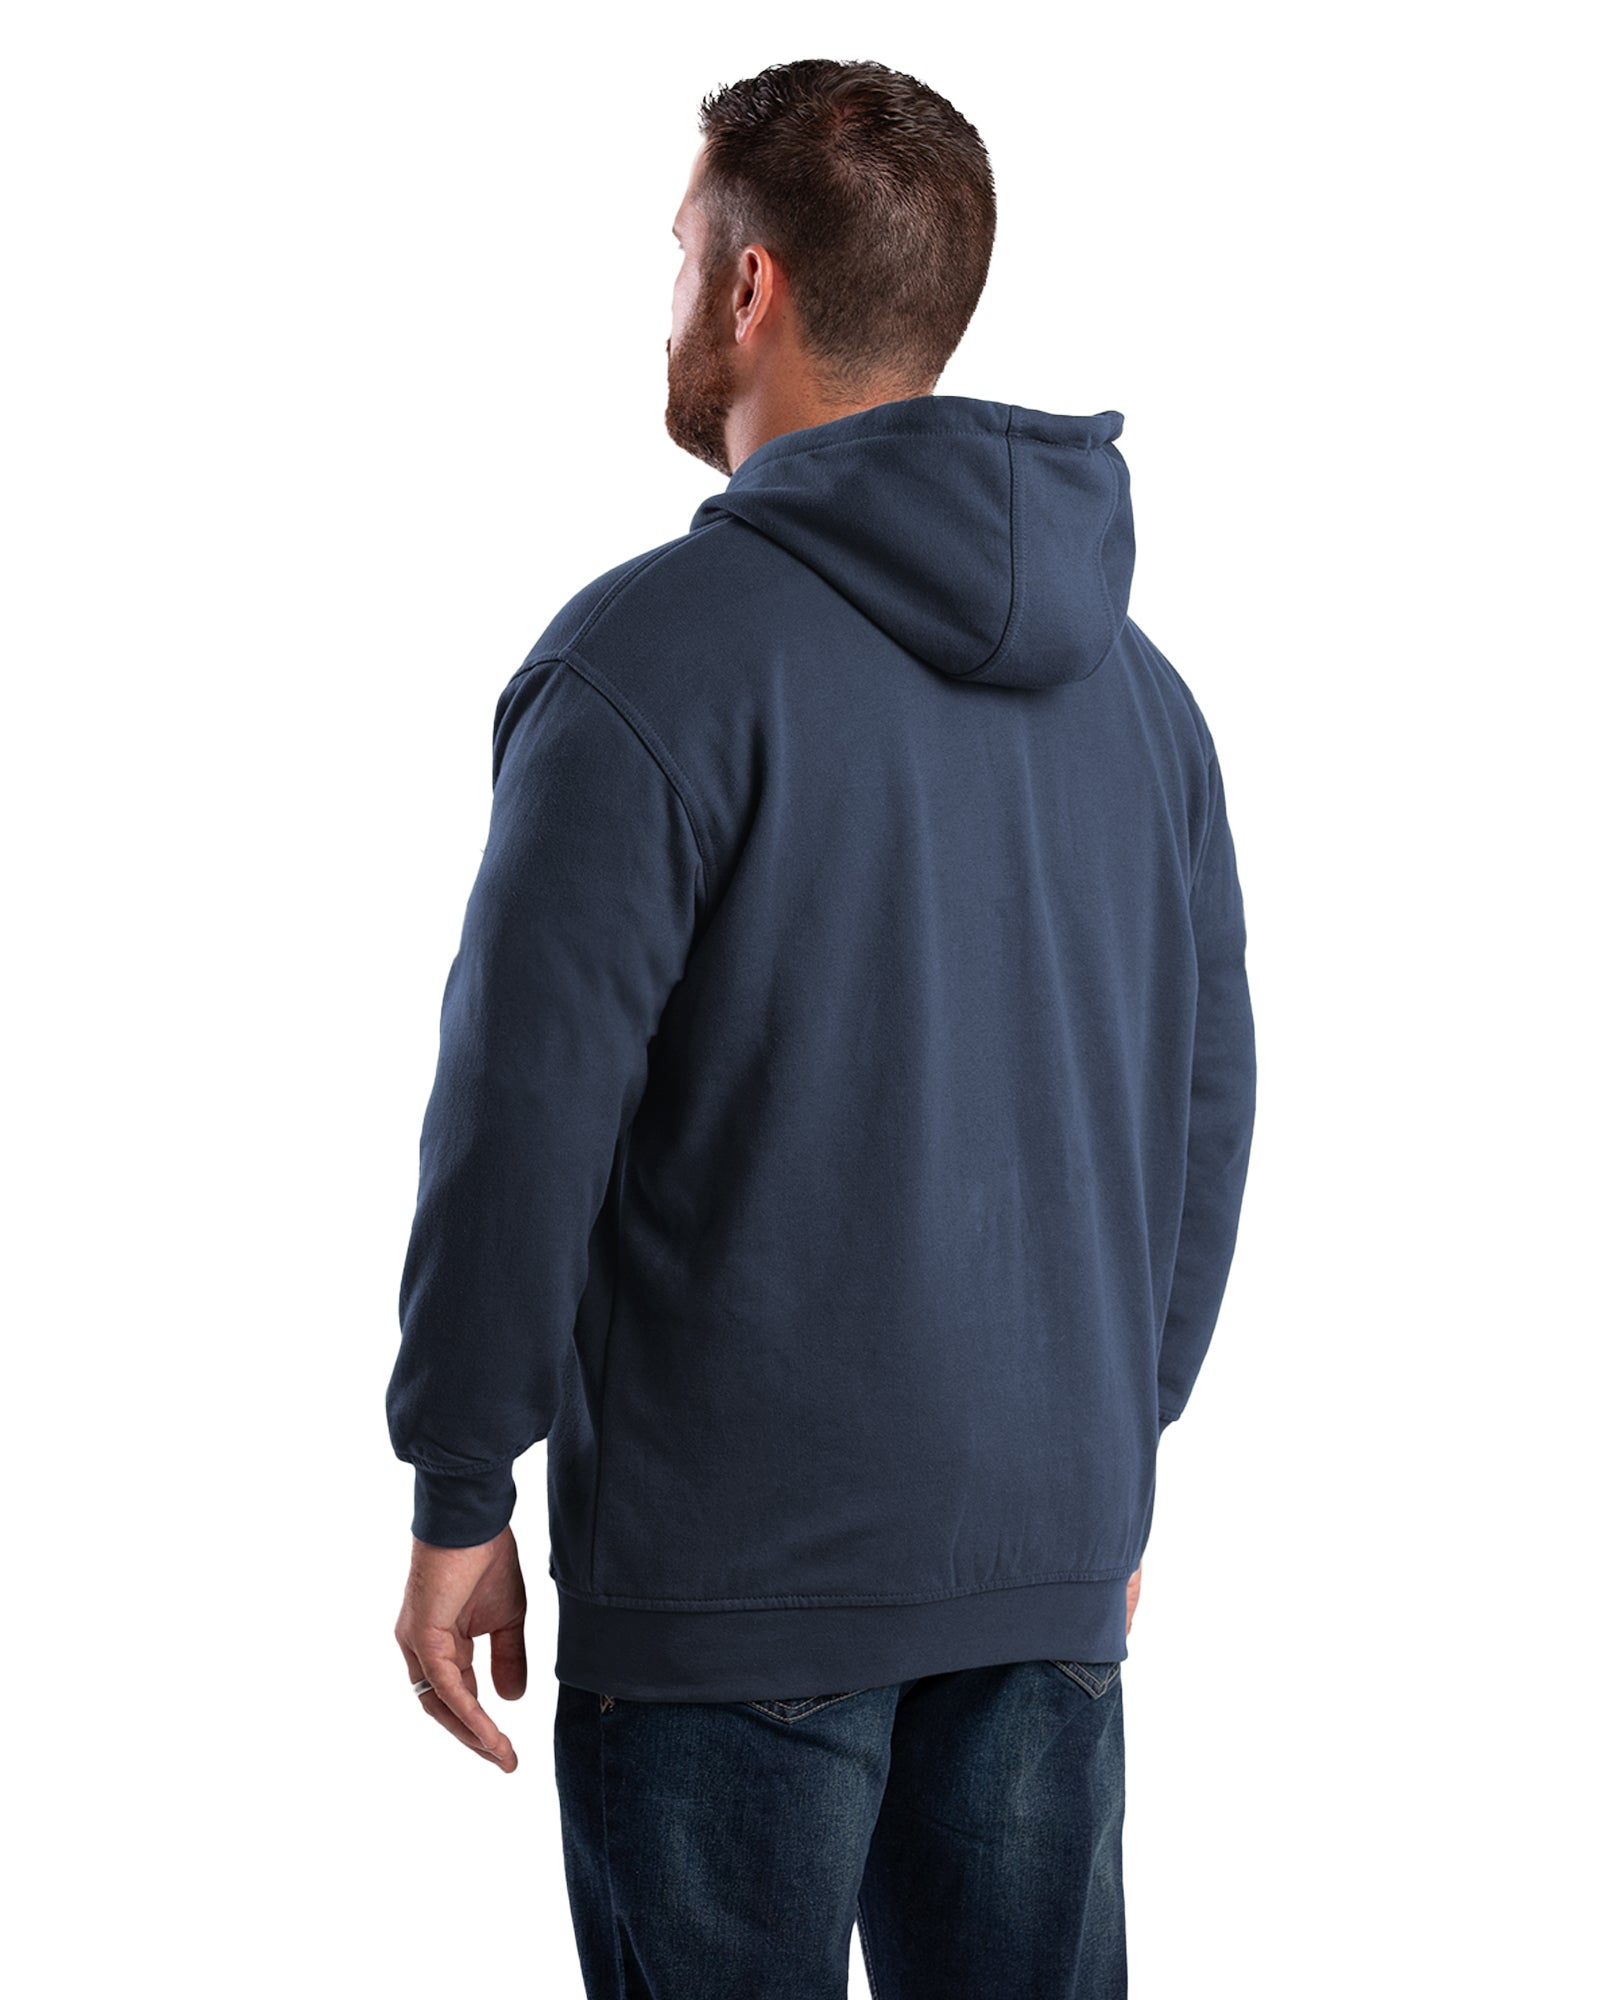 SZ101NV Heritage Thermal-Lined Full-Zip Hooded Sweatshirt